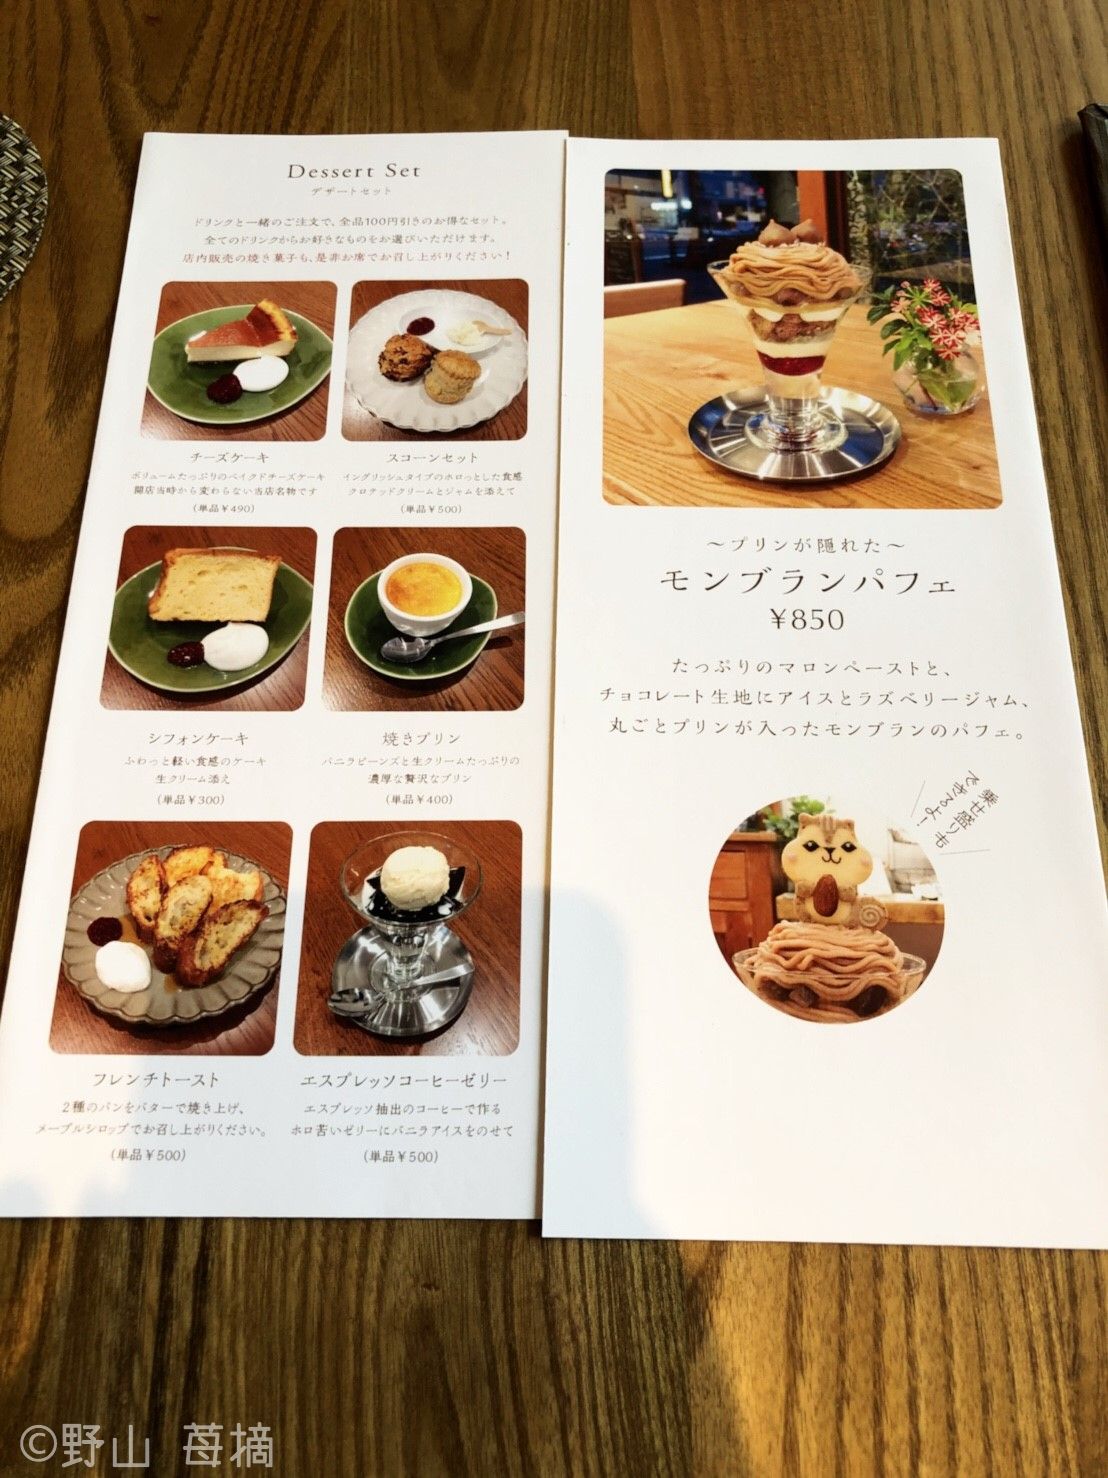 動物クッキーのせパフェが可愛すぎ 目黒区 Henteco森の洋菓子店 東京都 トラベルjp 旅行ガイド